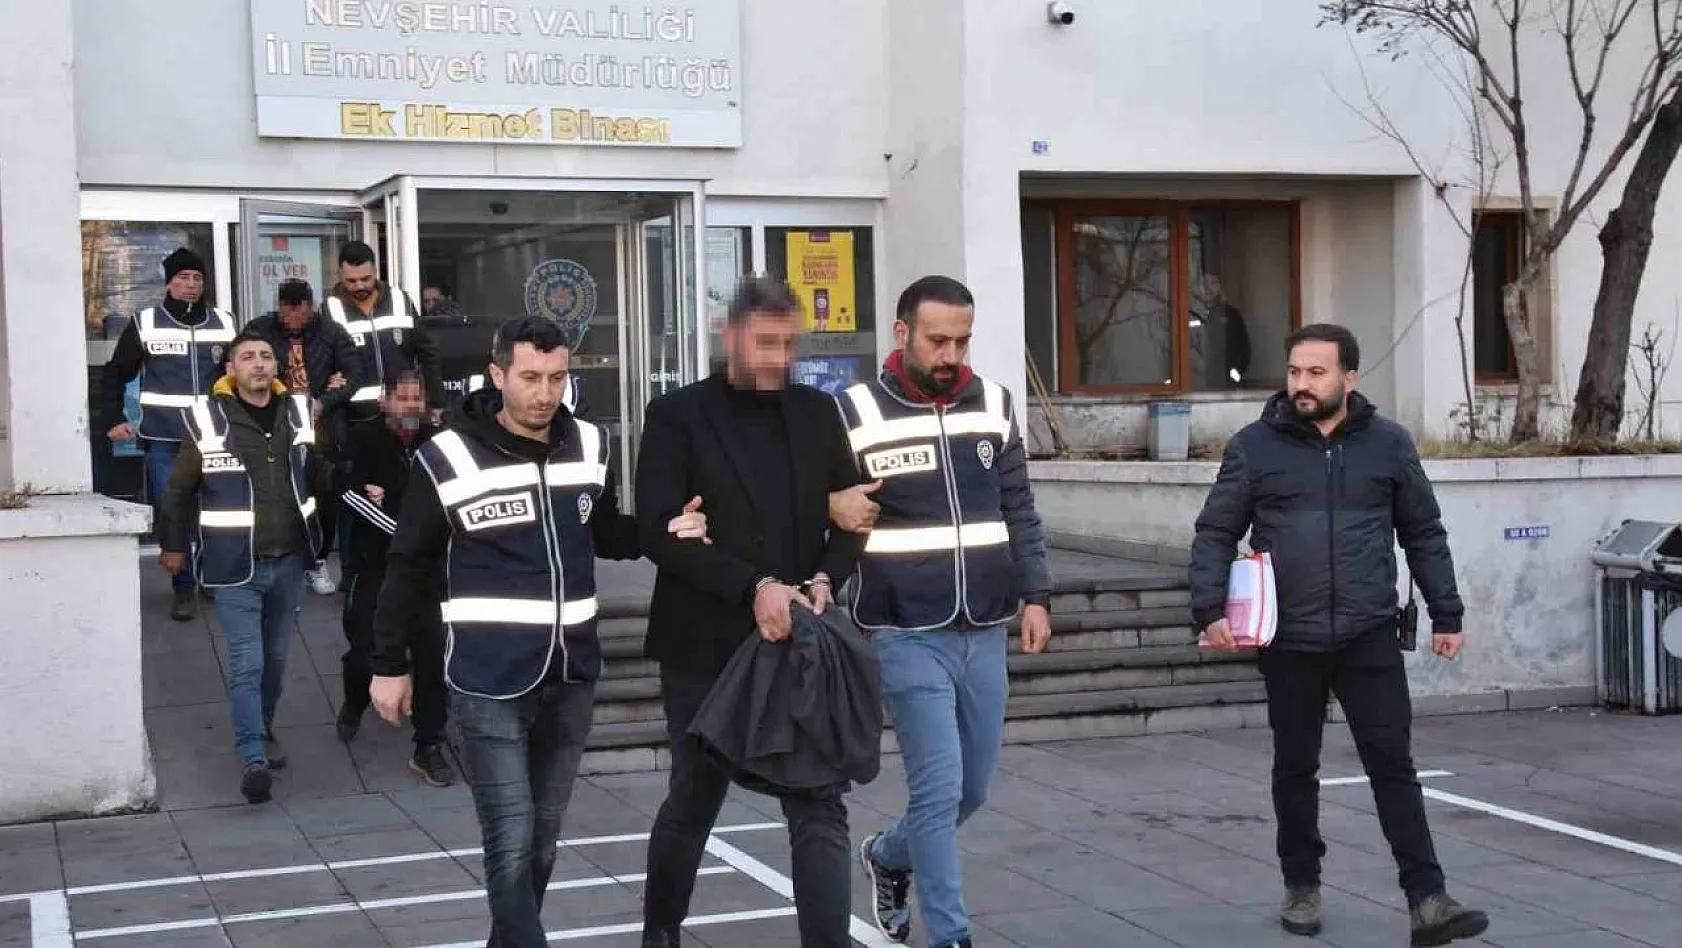 Nevşehir'de 'sazan sarmalı' operasyonu: 5 gözaltı